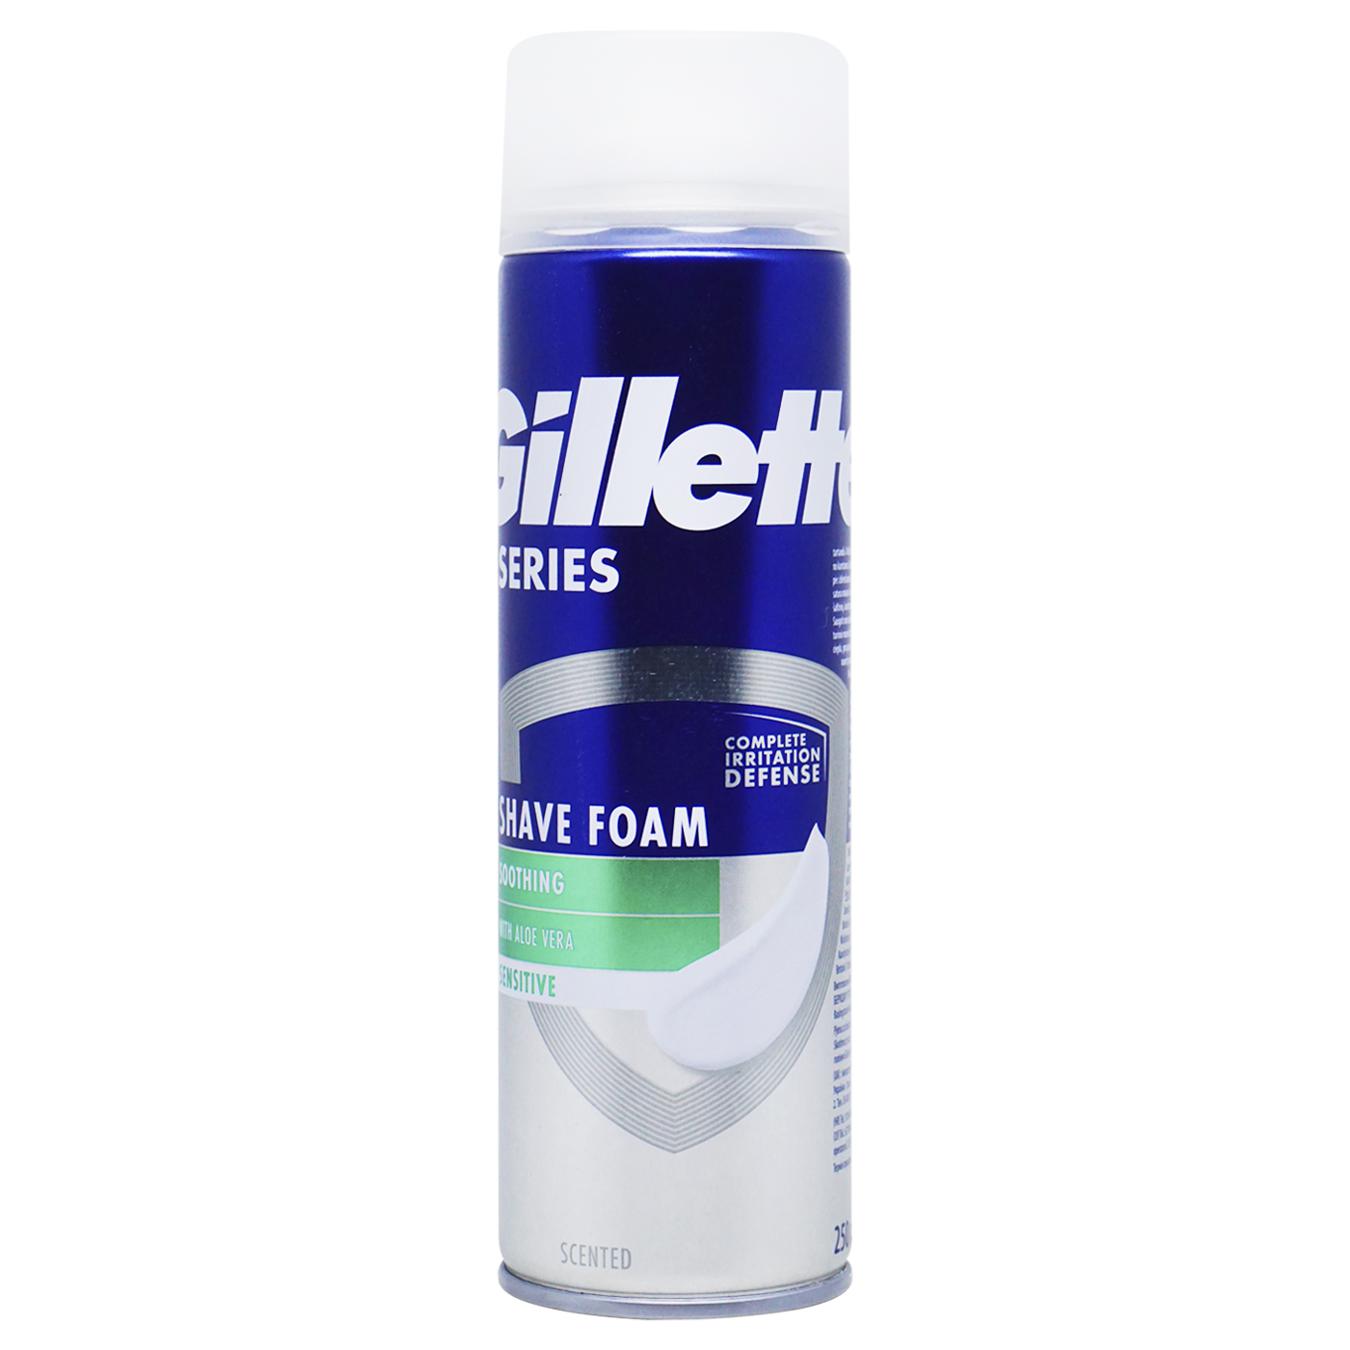 Gillette soothing shaving foam 200ml